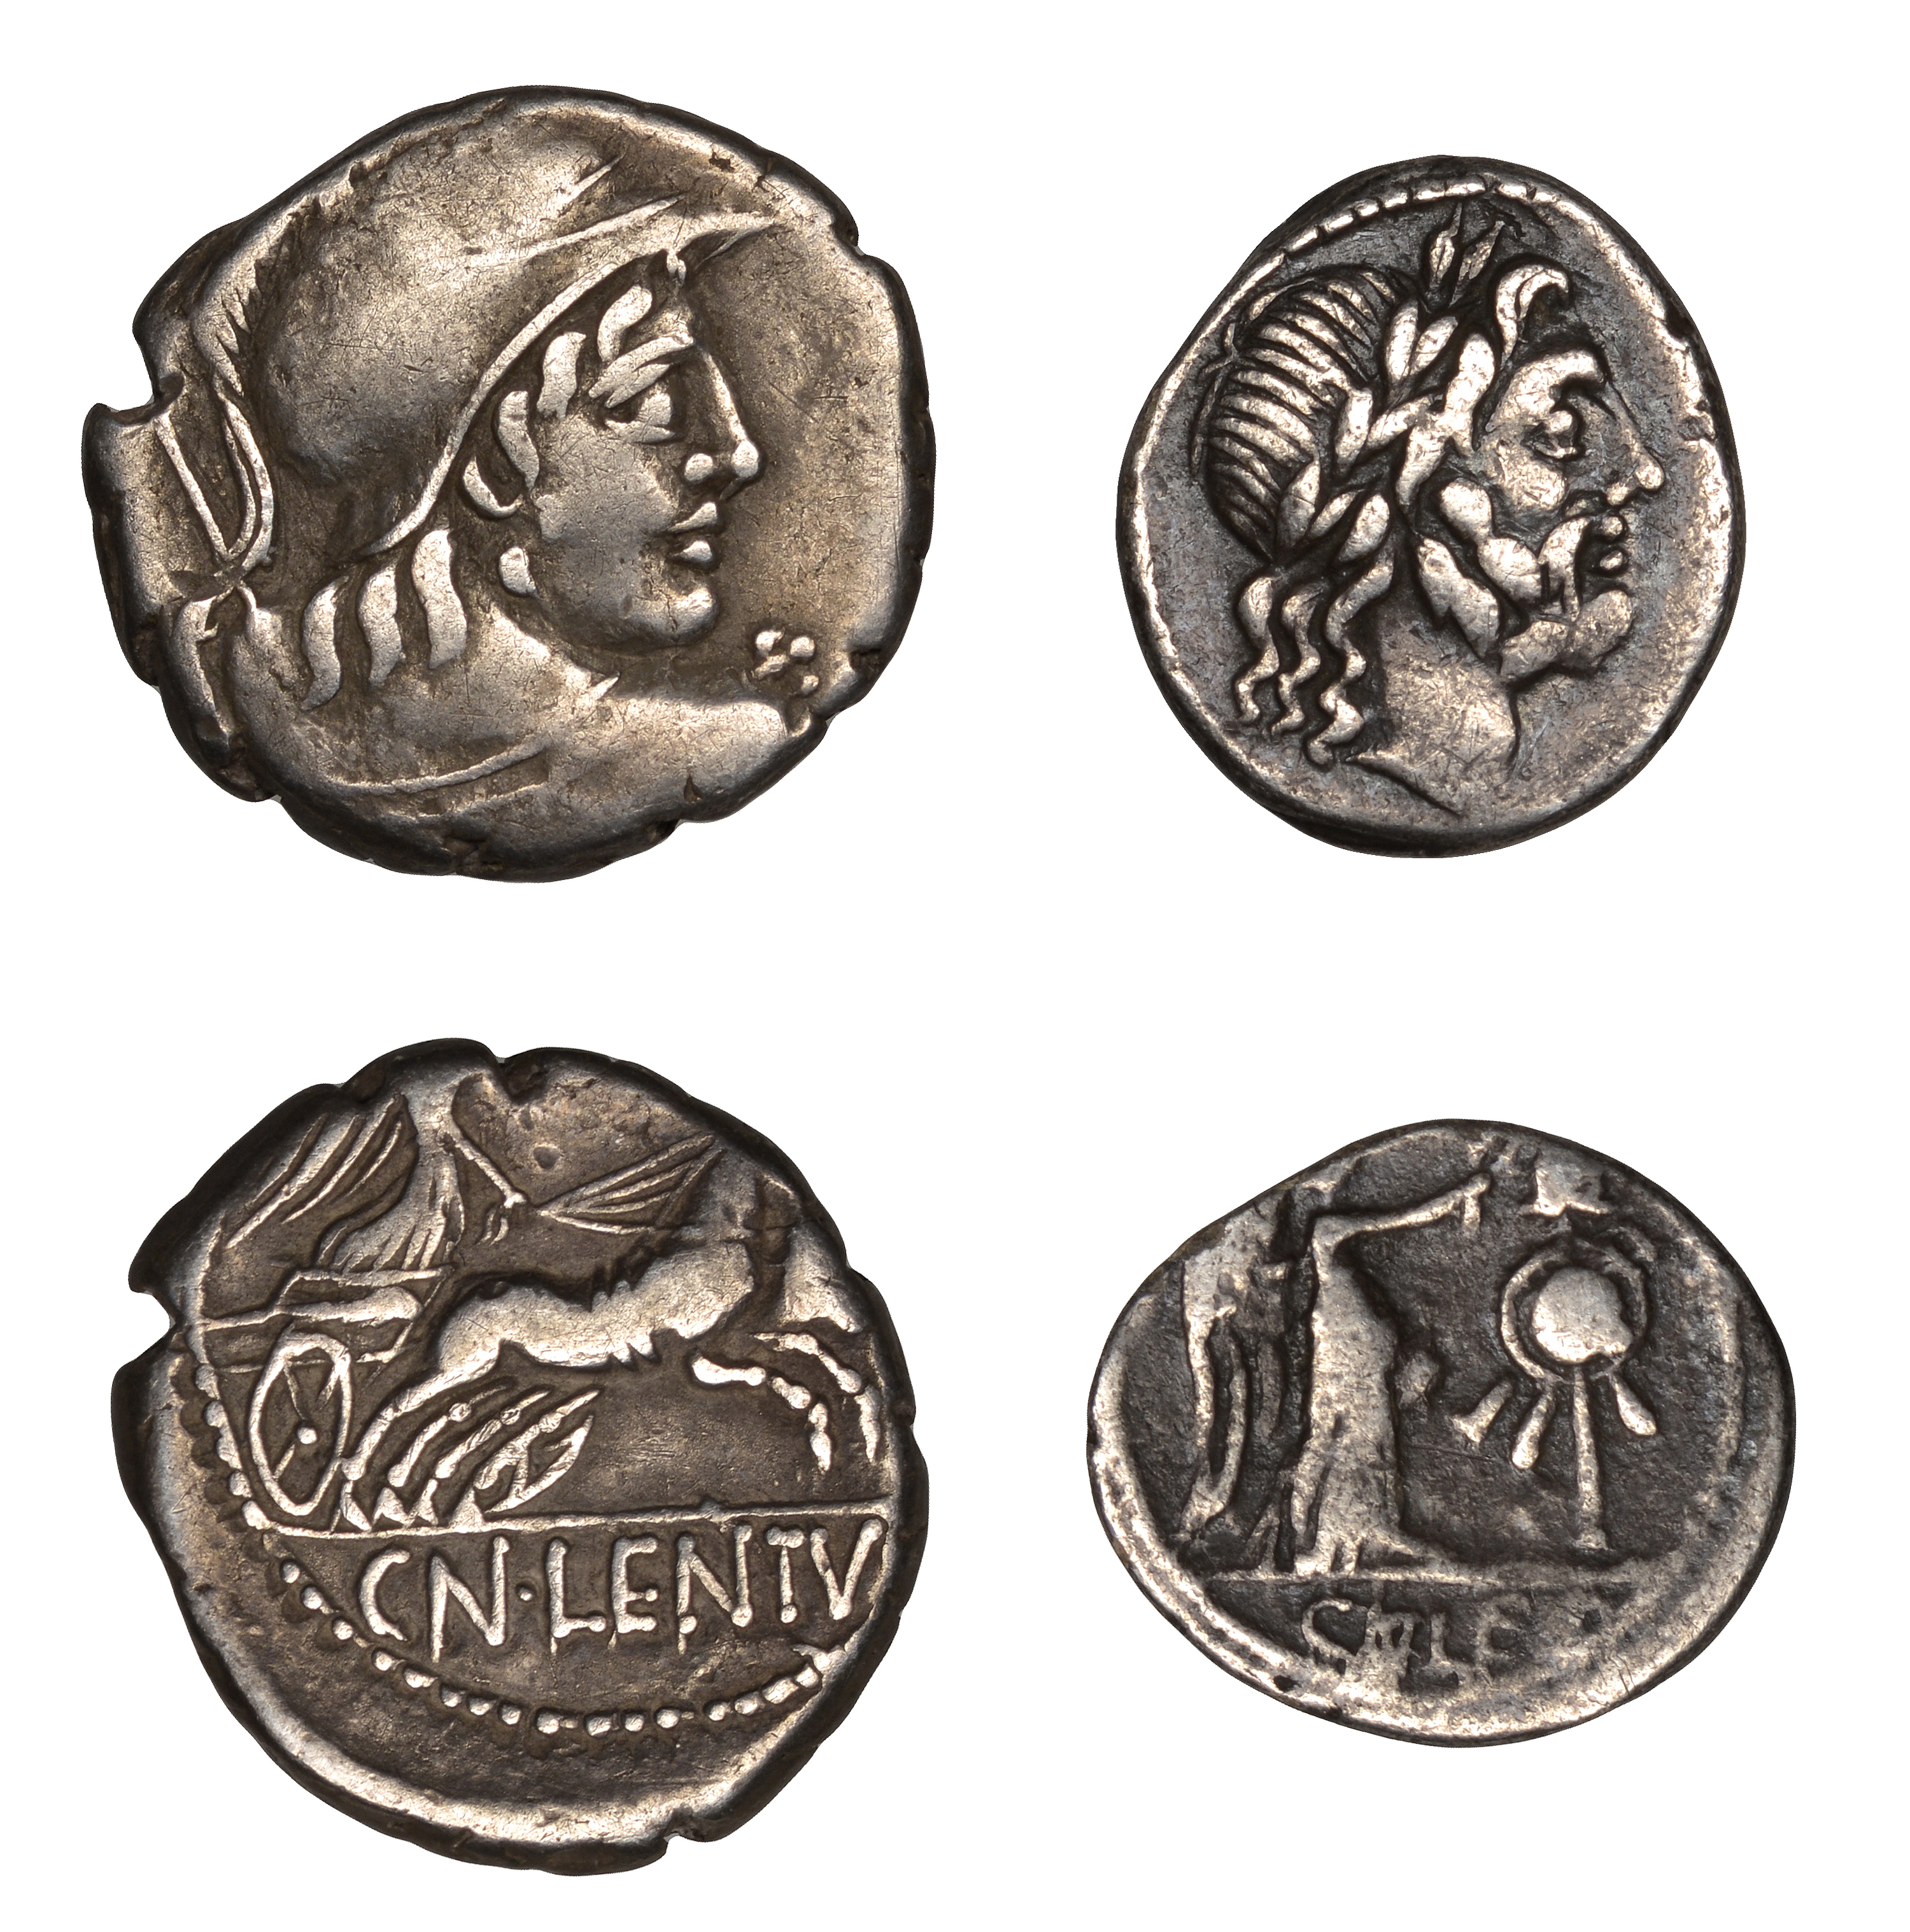 Roman Republican Coinage, Cn. Lentulus Clodianus, Denarius, c. 88, helmeted bust of Mars rig...